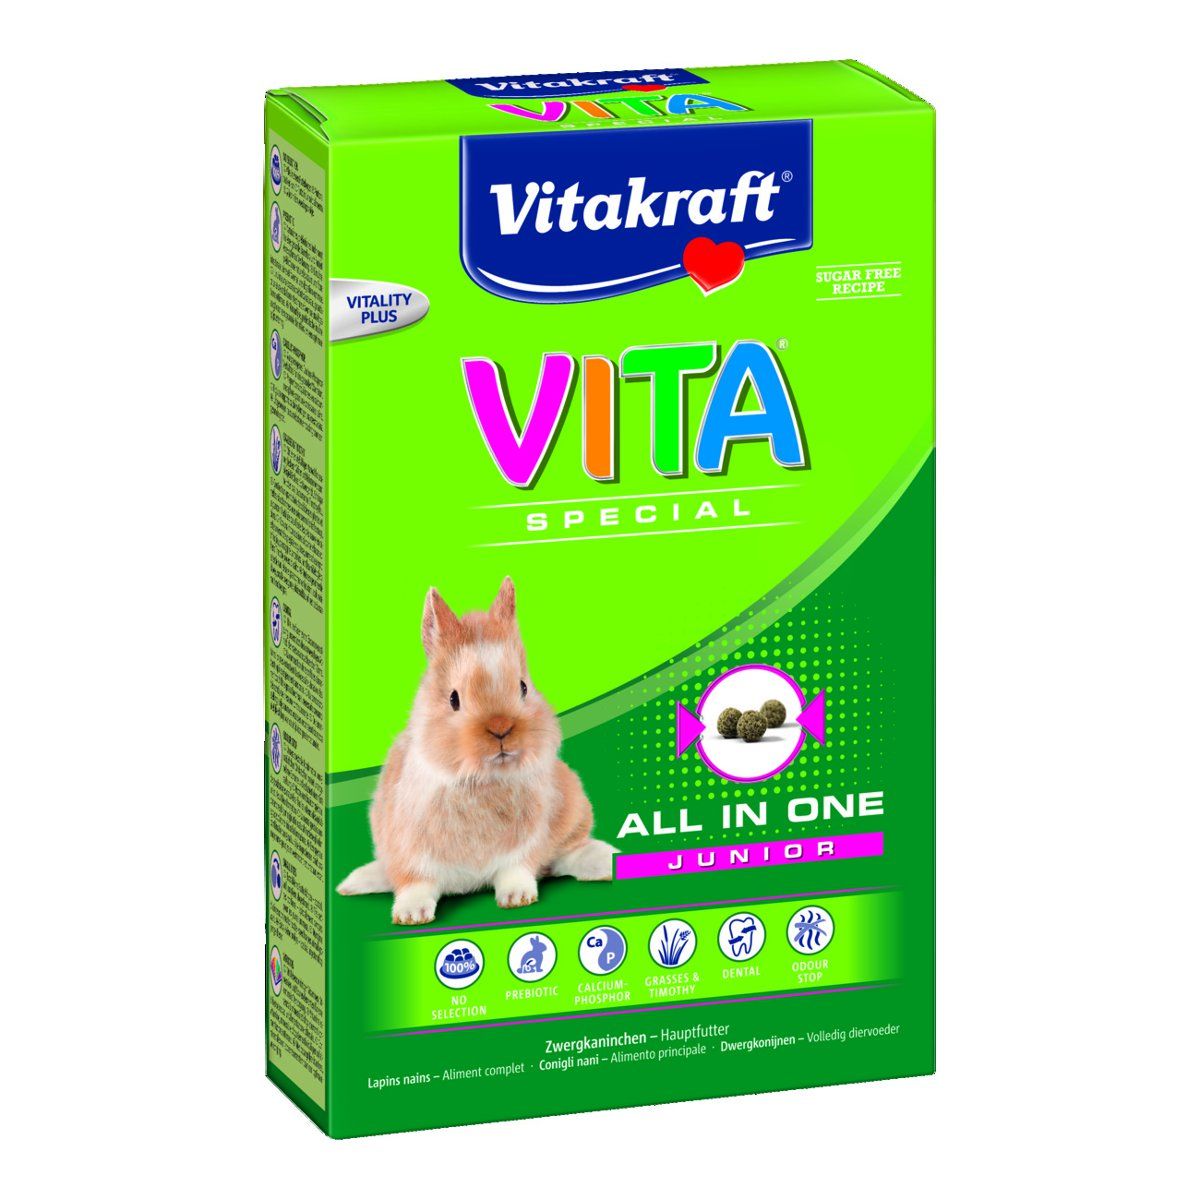 VITAKRAFT Vita Special Junior (Best for Kids) - Zwergkaninchen